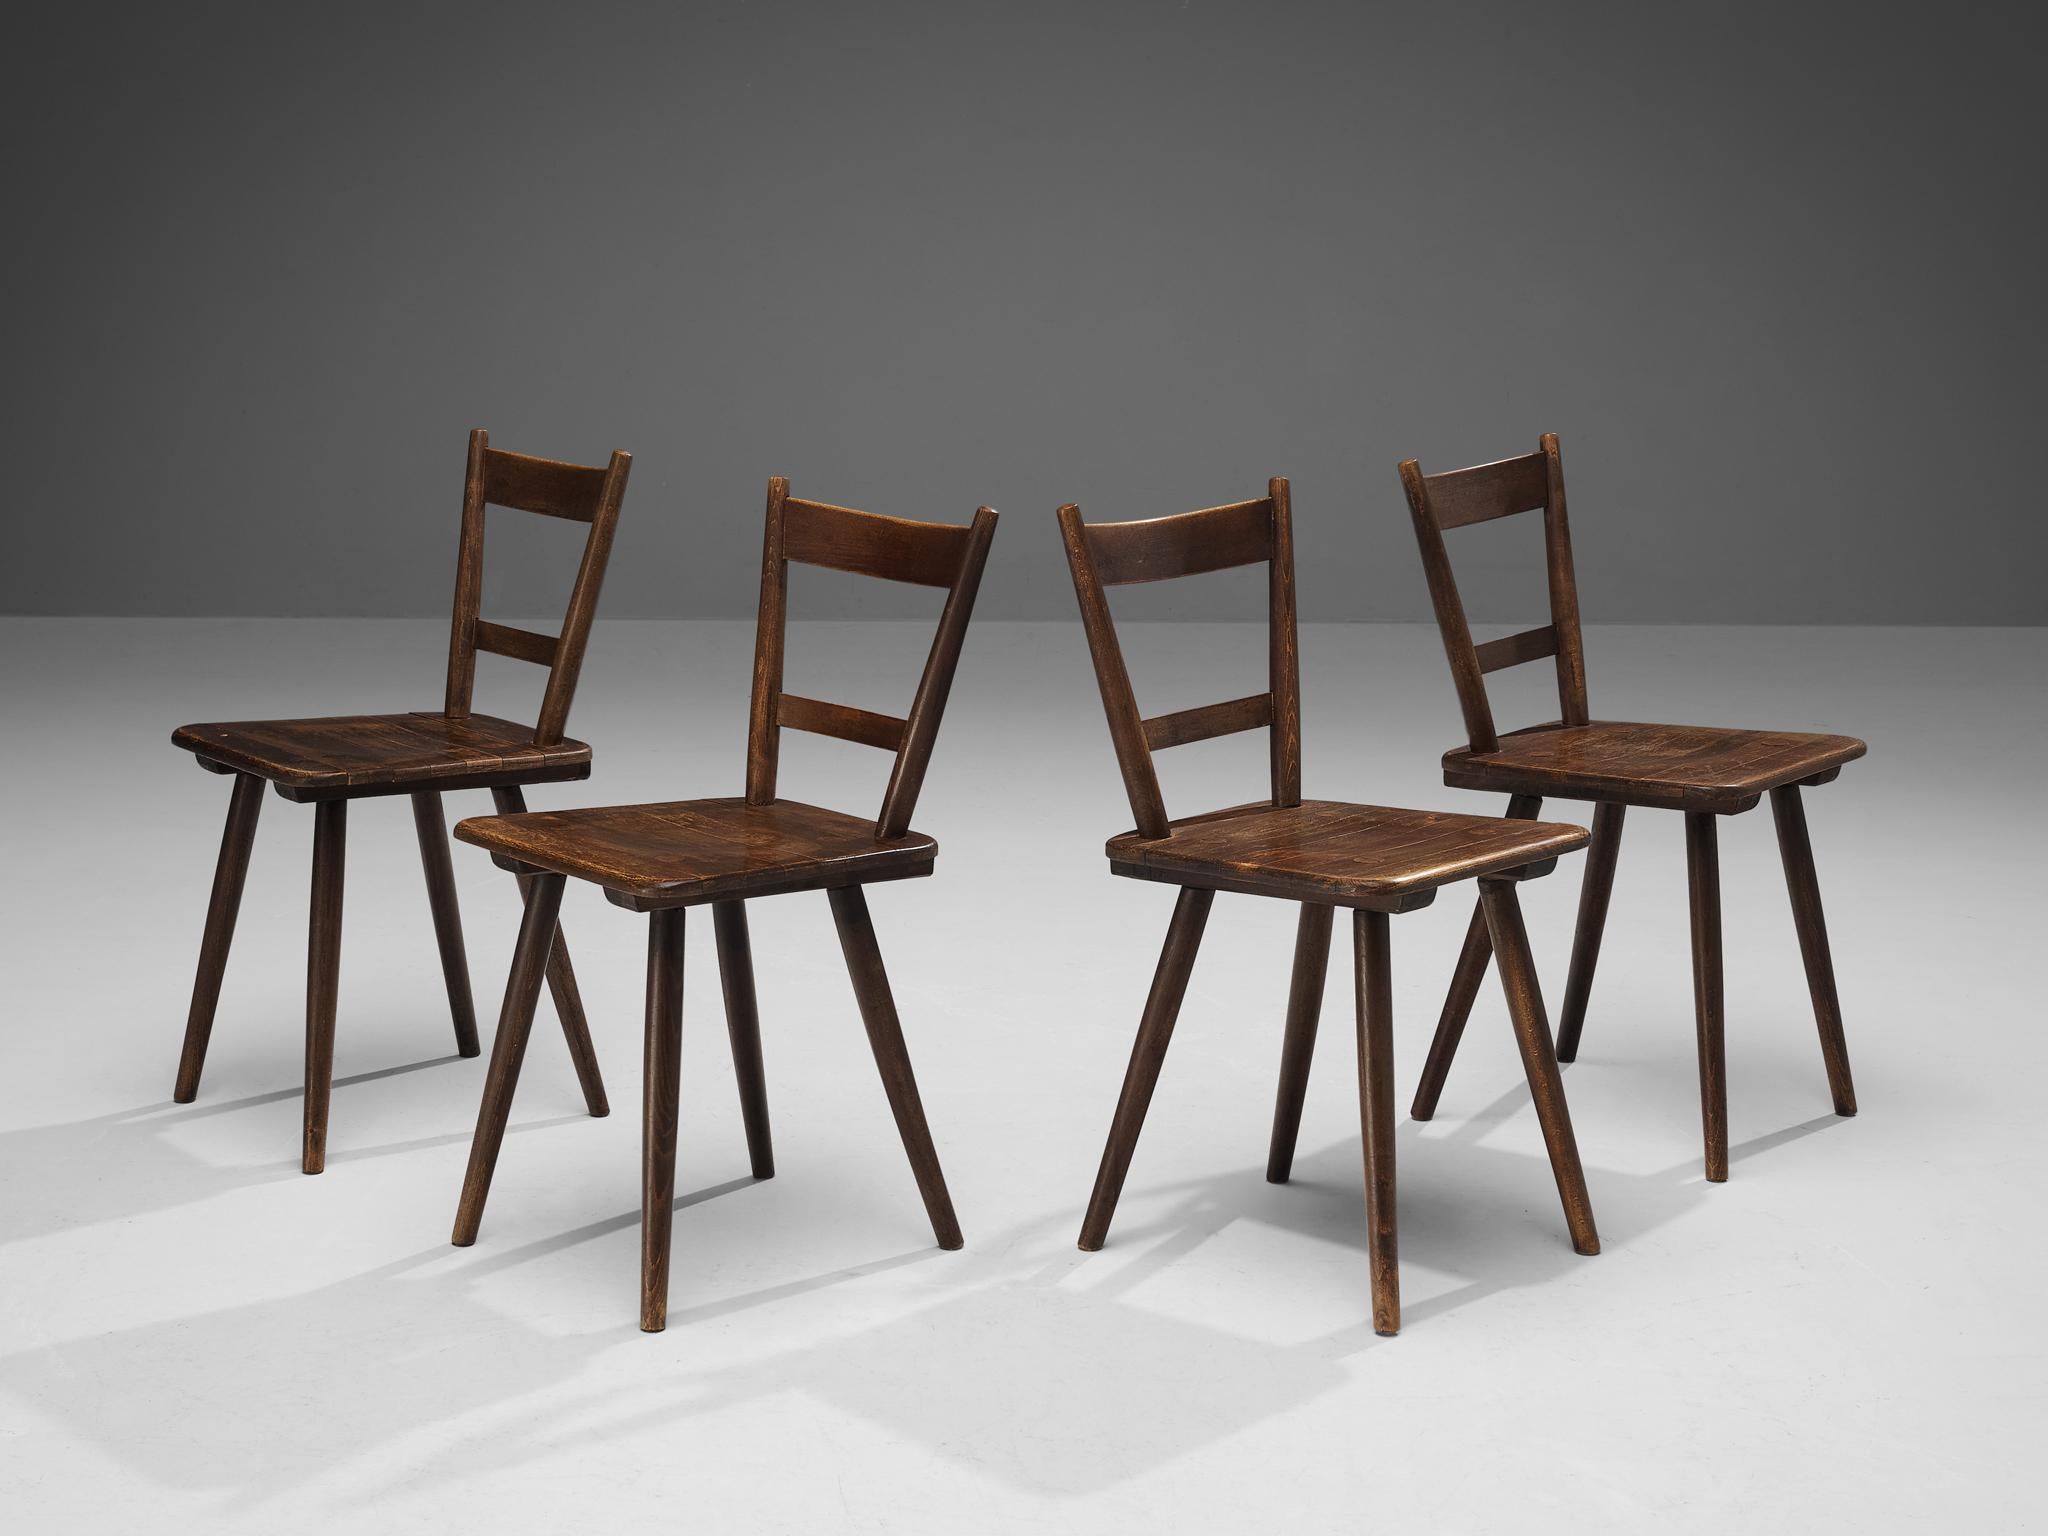 Ensemble de quatre chaises de salle à manger, bois teinté, France, fin des années 1940. 

Ensemble de quatre chaises de salle à manger rustiques fabriquées en France. Simple mais élégante, cette chaise présente un cadre modeste avec des éléments